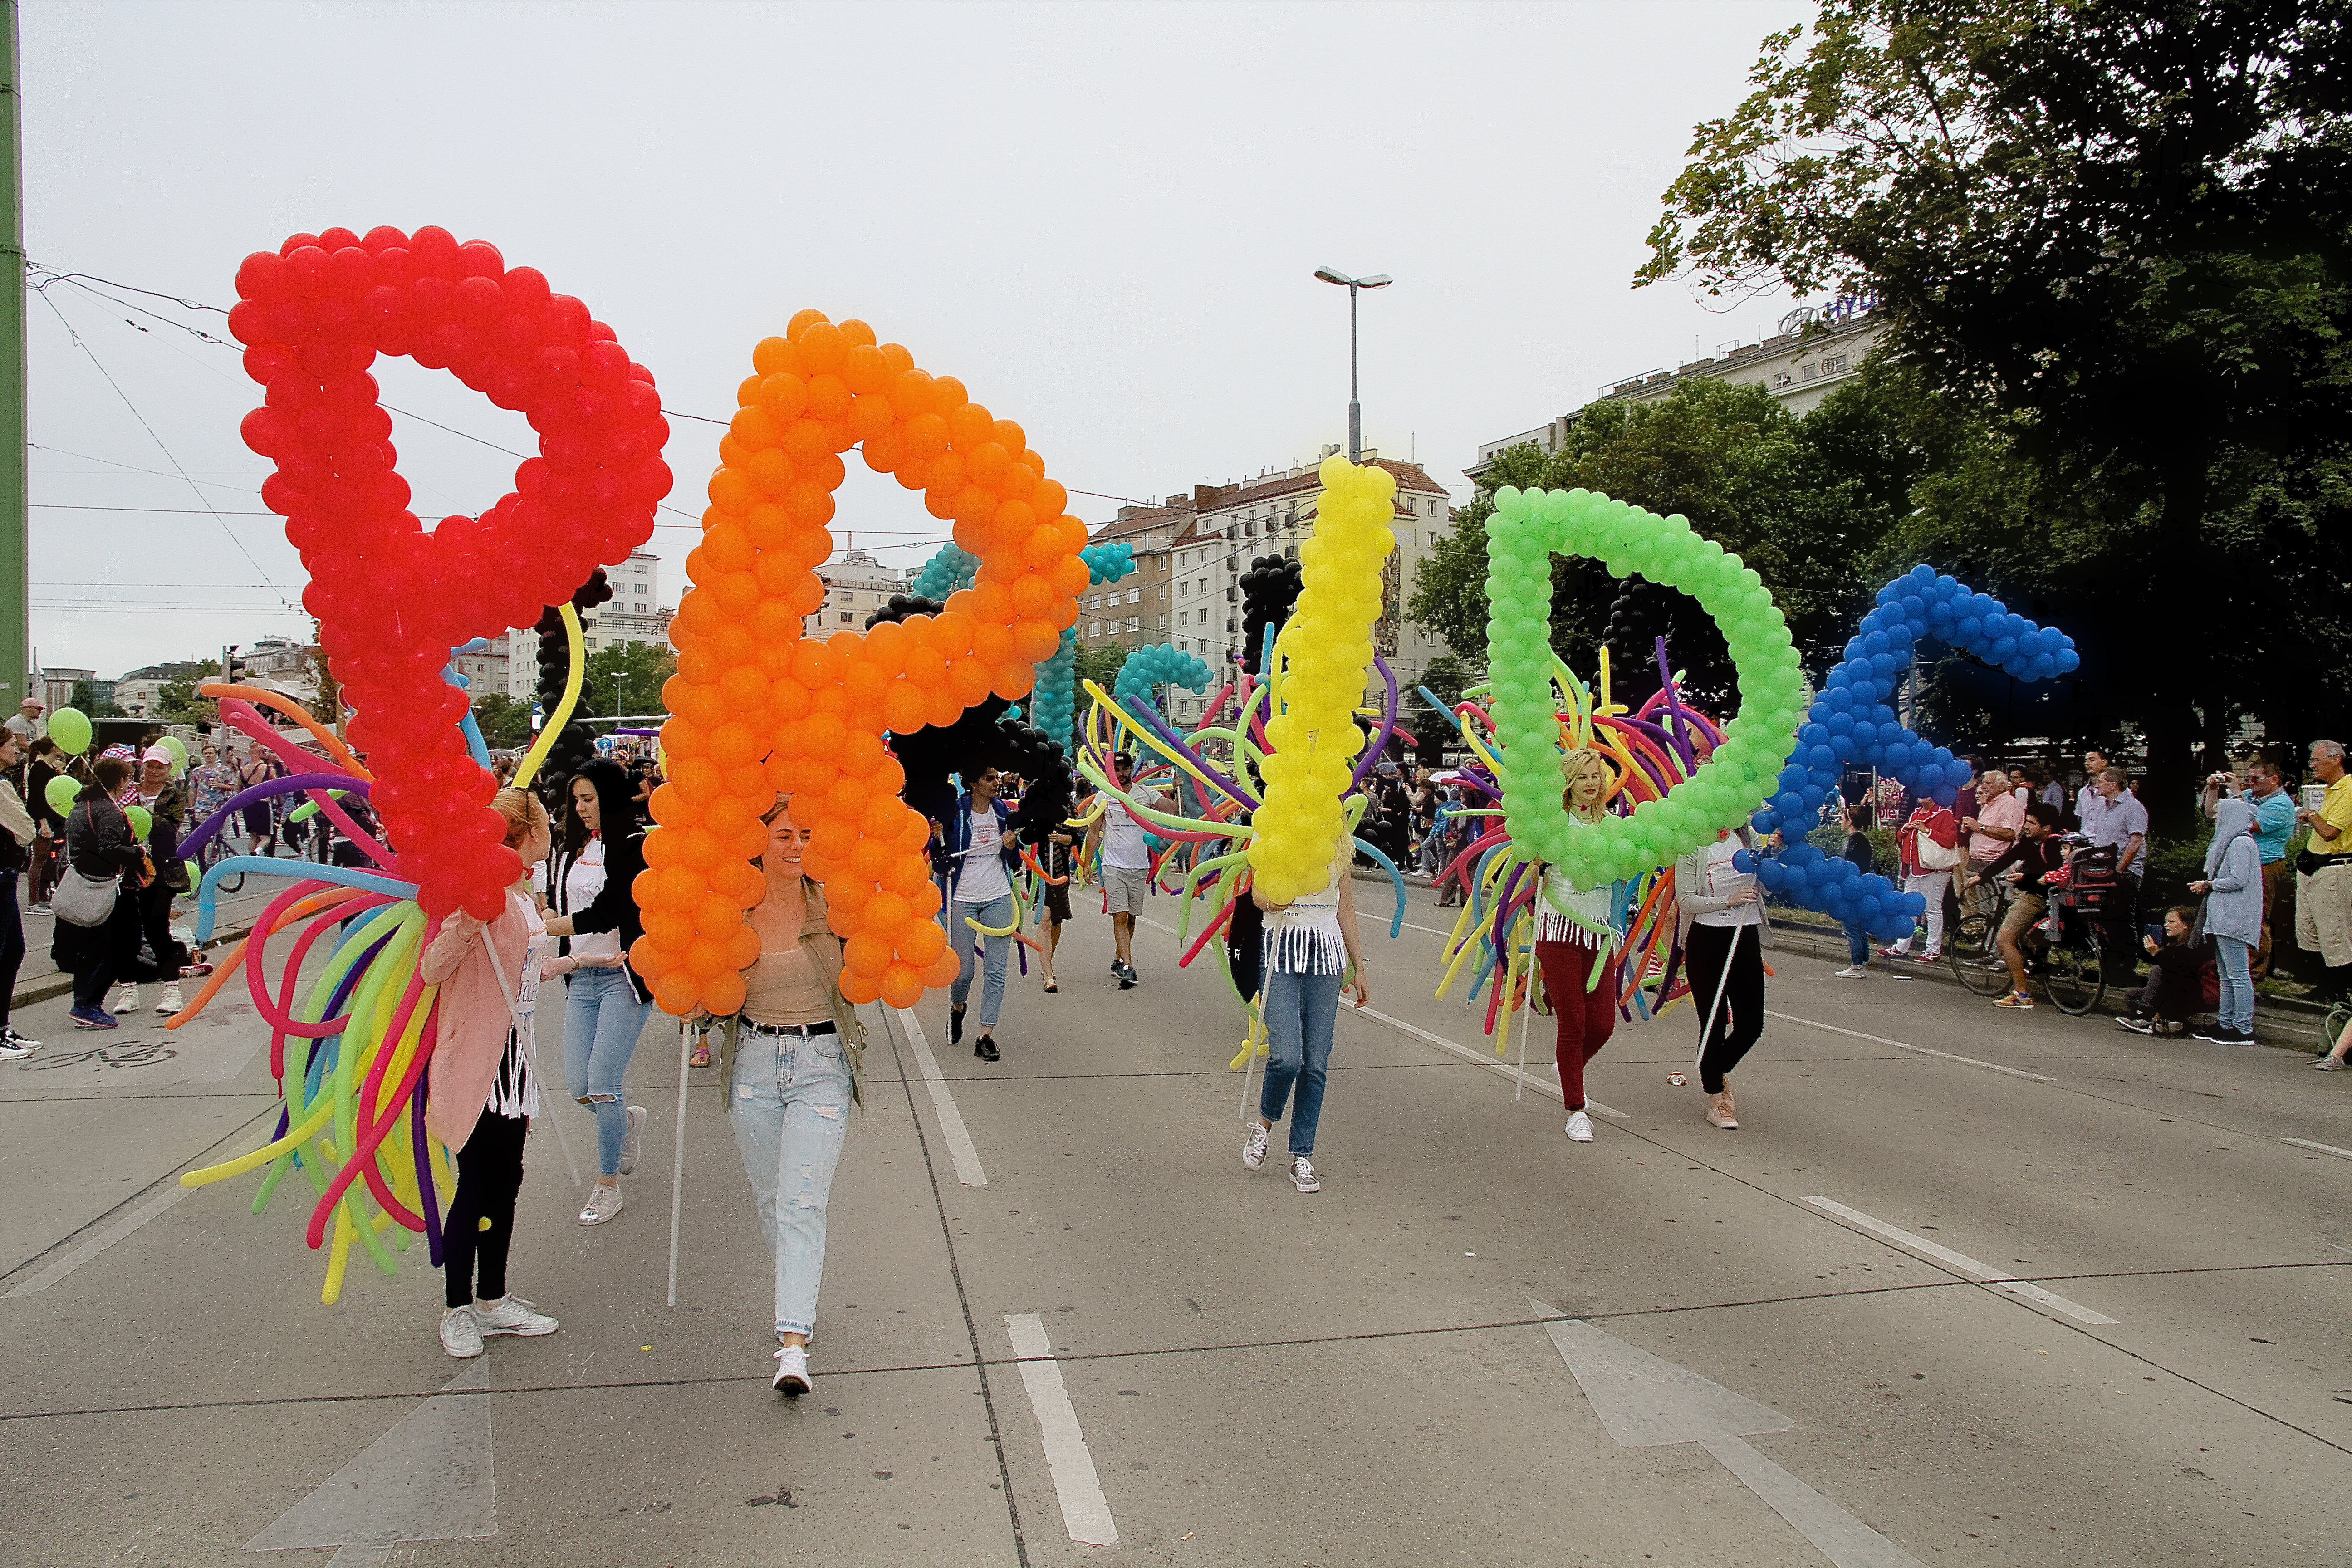 Regenbogenparade der Vienna Pride, viele Menschen demonstrieren auf der Straße und halten bunte Ballone in die Luft